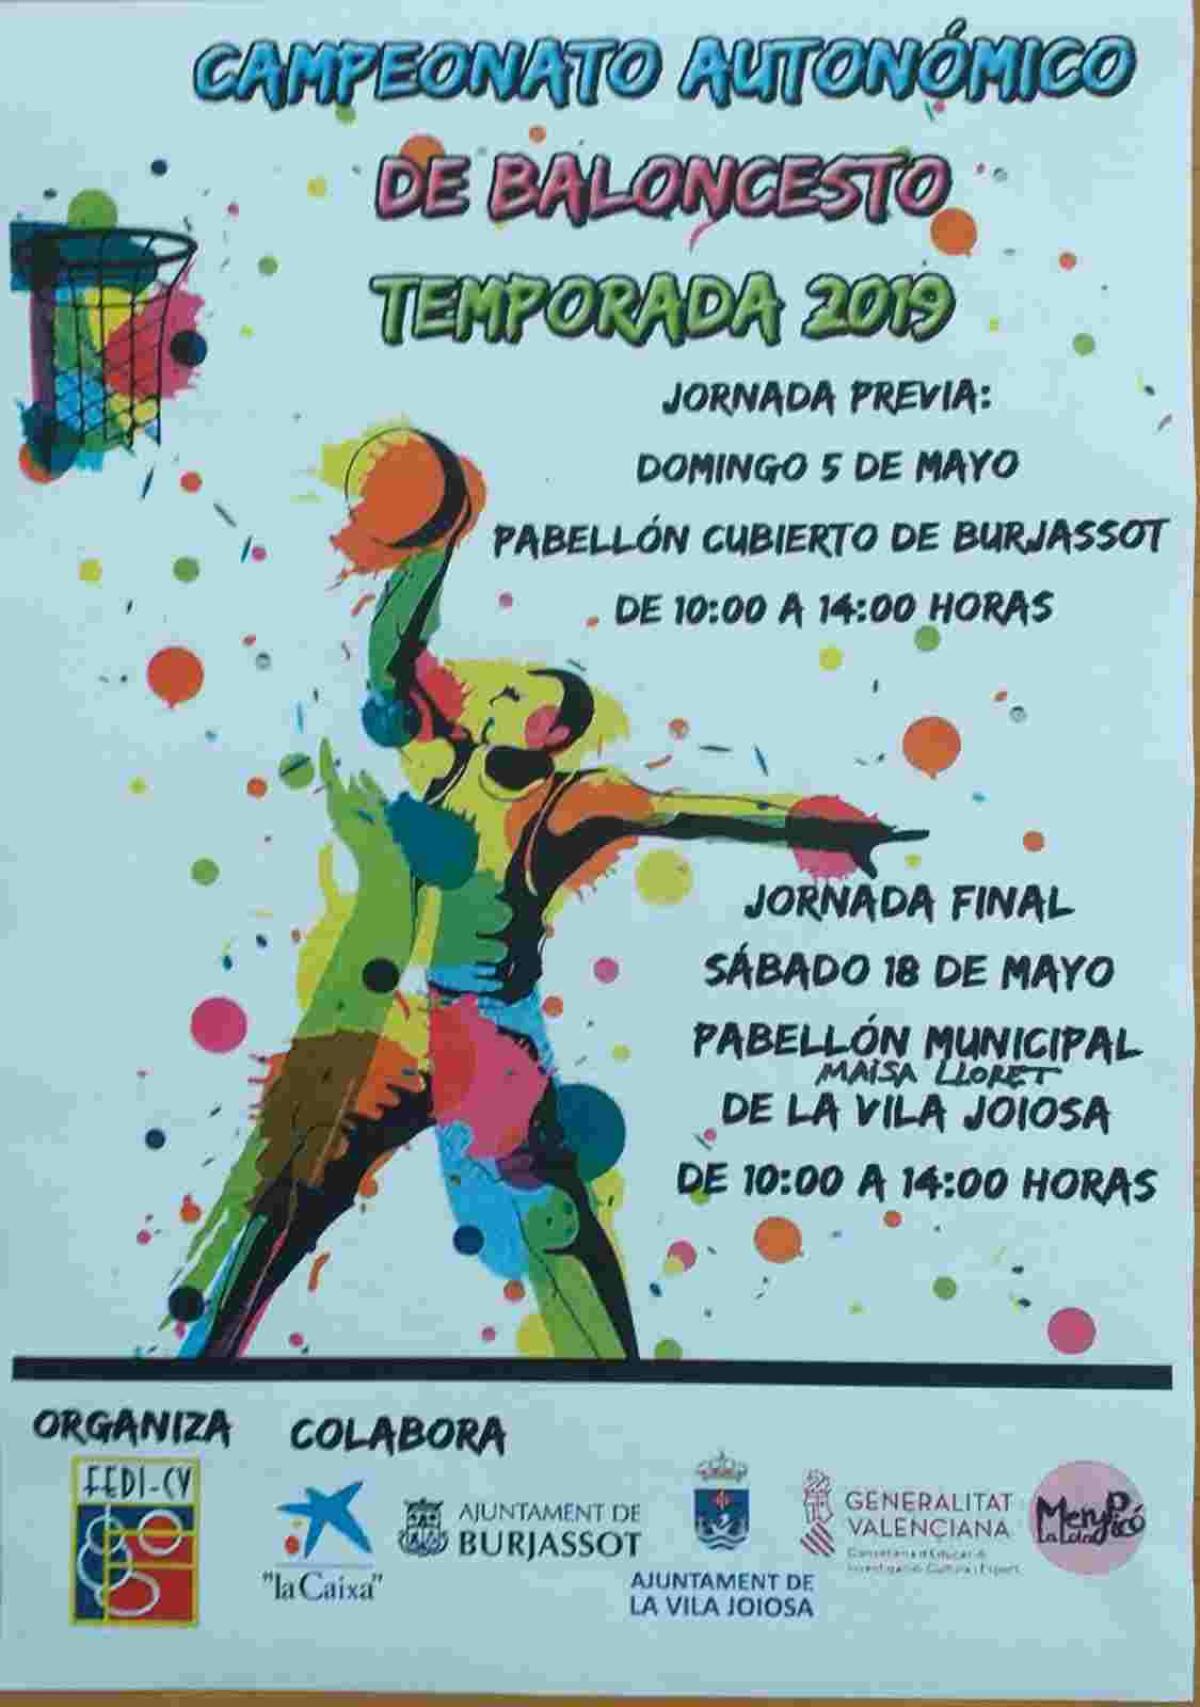 La Vila Joiosa, sede de la final del Campeonato Autonómico de Baloncesto de la Comunidad Valenciana